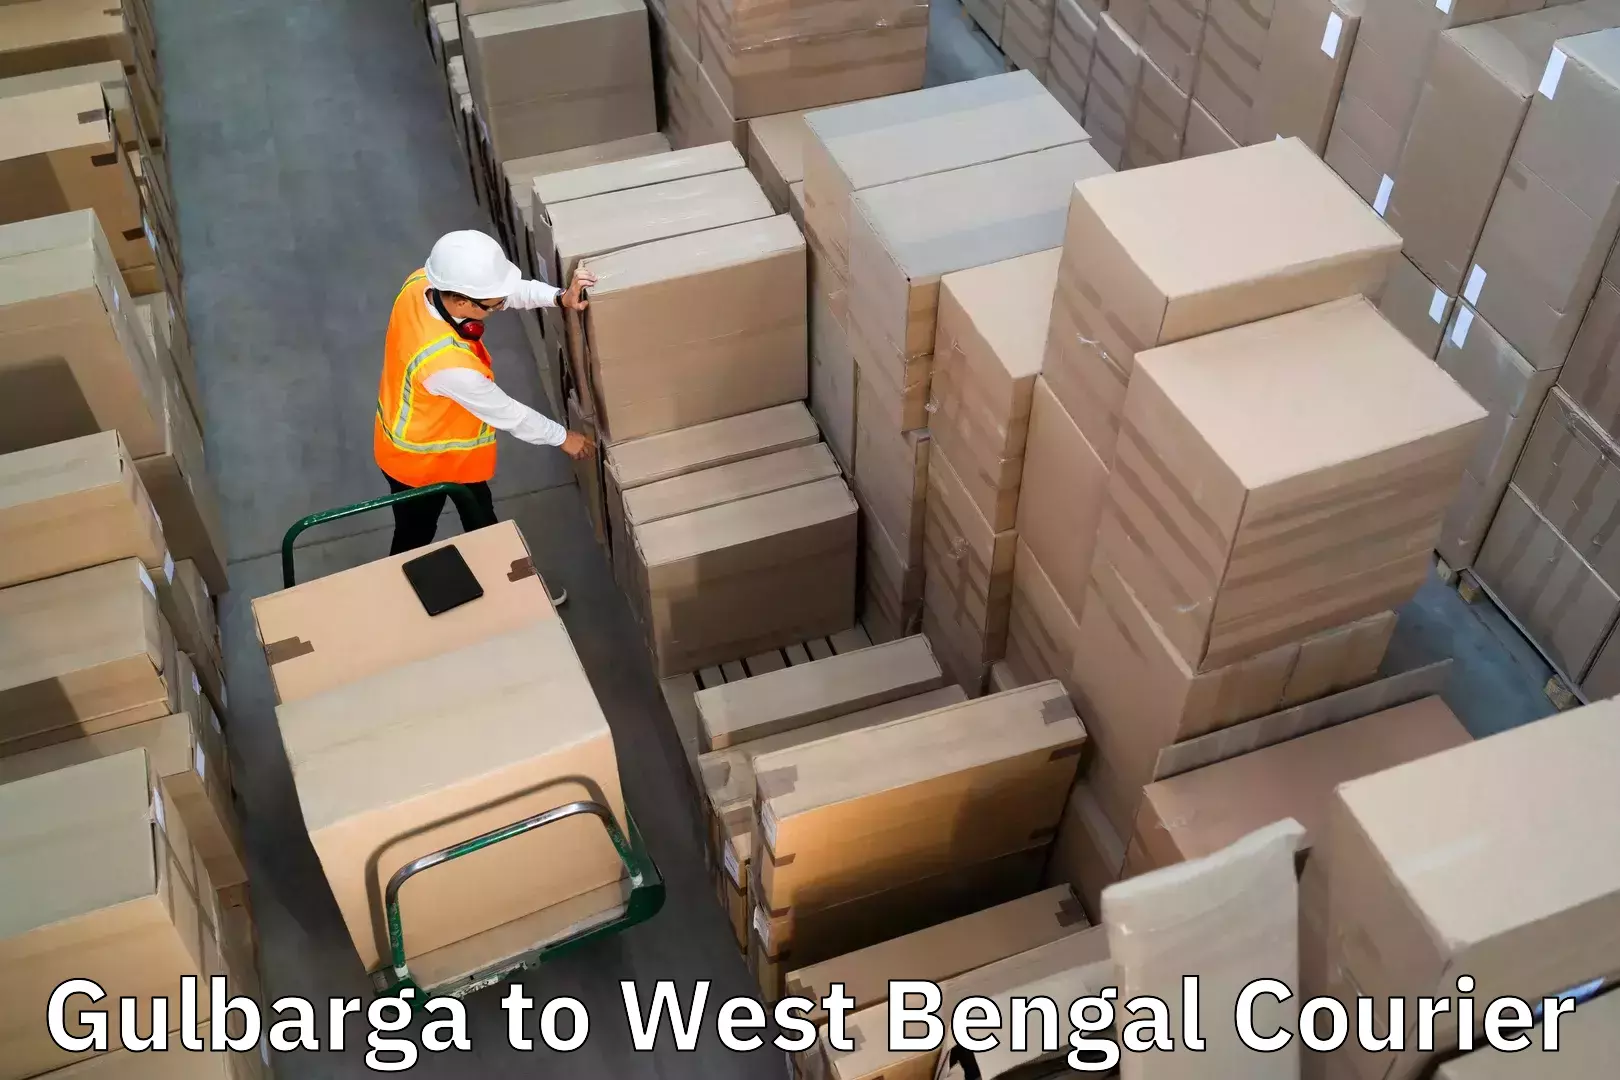 Luggage transport service Gulbarga to Minakhan